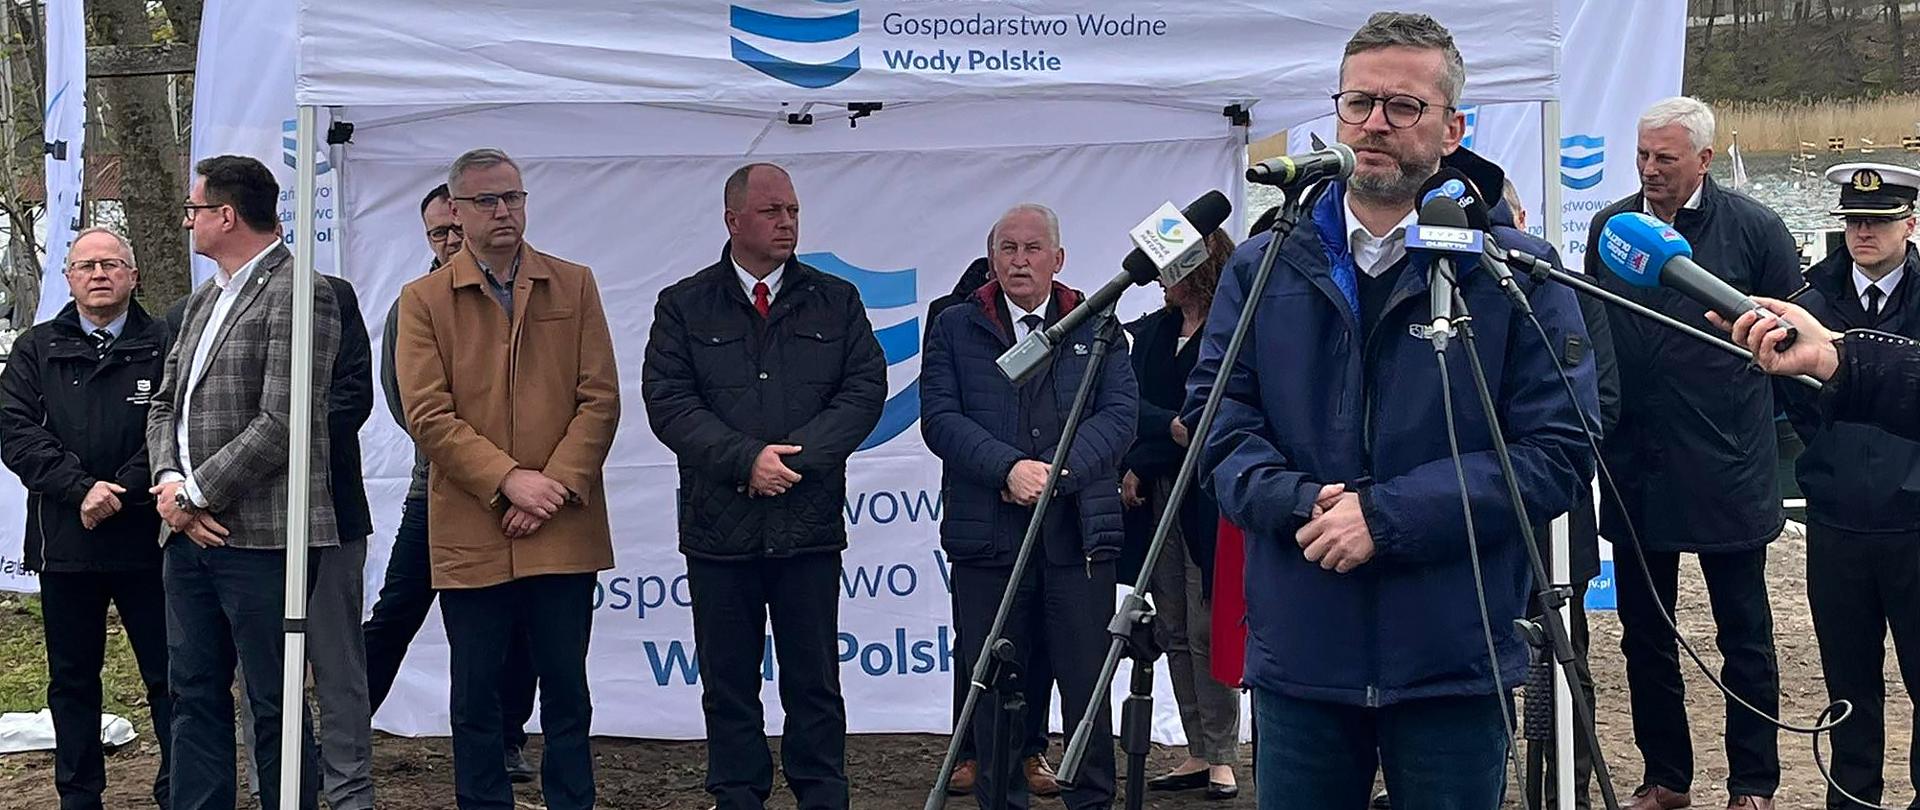 25 kwietnia 2022 r. otwarto dla żeglugi drogę wodną Pisz – Węgorzewo w systemie Wielkich Jezior Mazurskich.